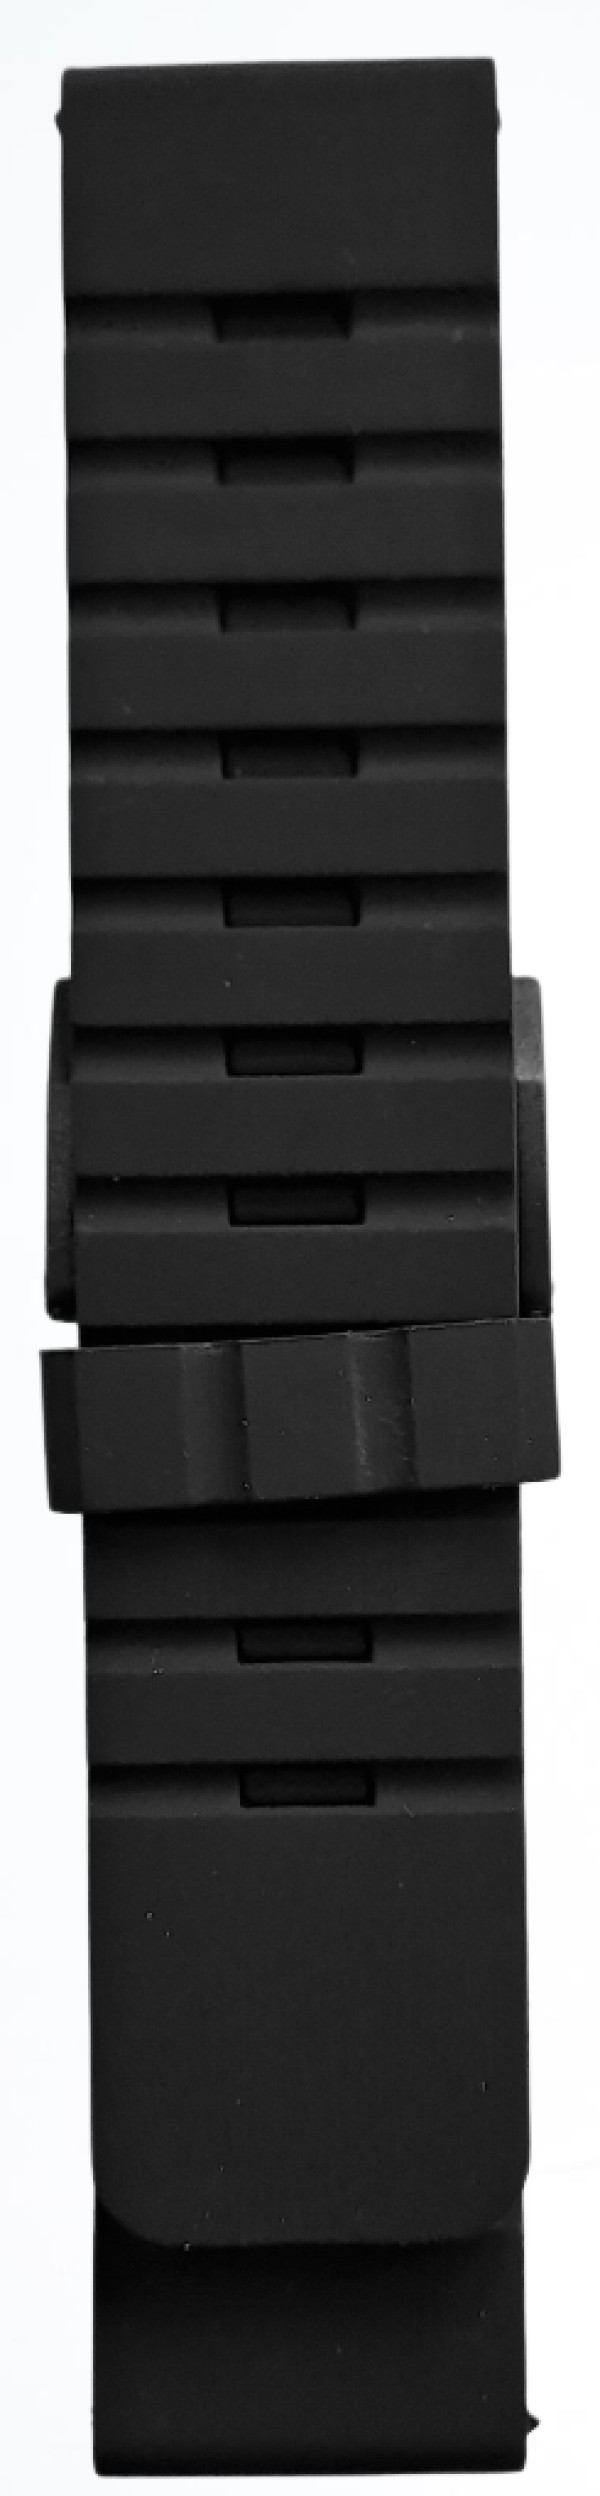 Silikonski kaiš - SK 24.45 Crna boja 24mm